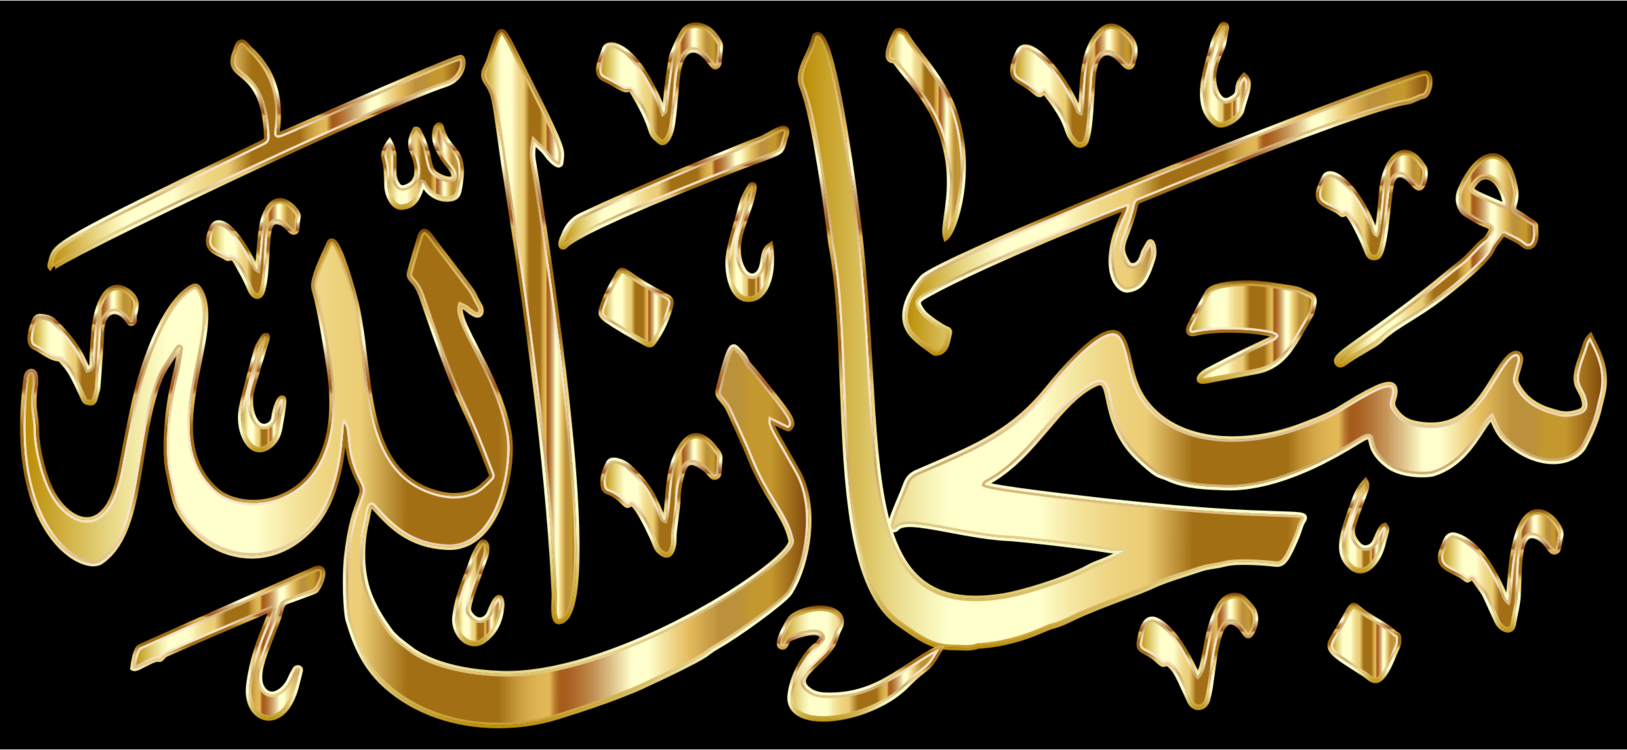 kisscc0-ramadan-eid-mubarak-jumu-ah-islam-muslim-subhanallah-gold-5b7579c6475260.5592068815344255422921.png